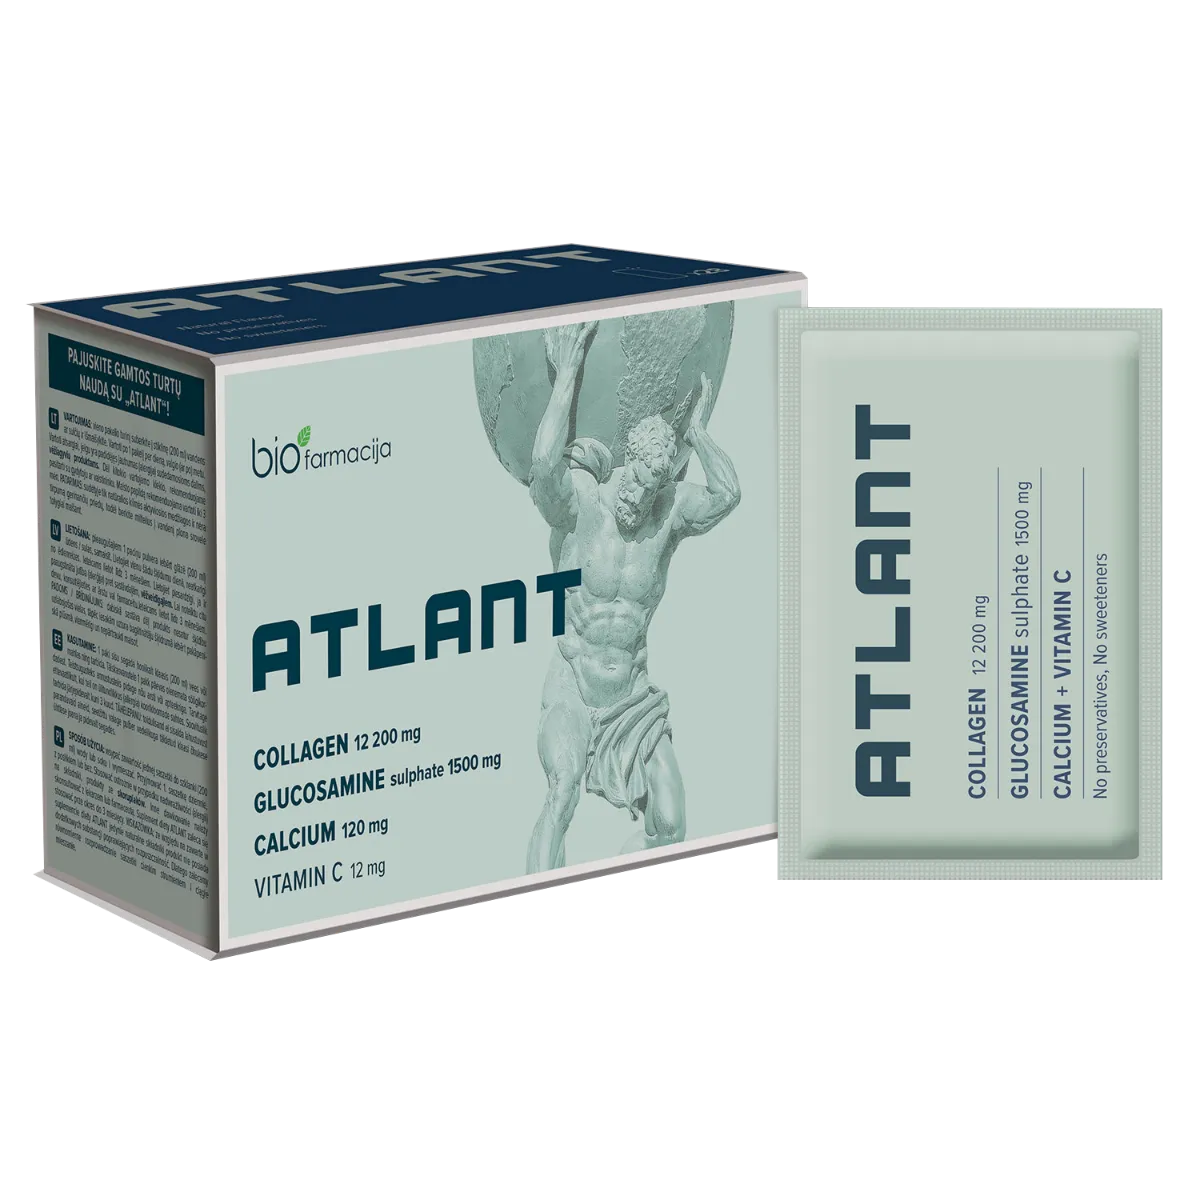 Biofarmacja ATLANT kompleks kolagenowo-glukozaminowy z dodatkiem wapnia i witaminy C, 30 saszetek